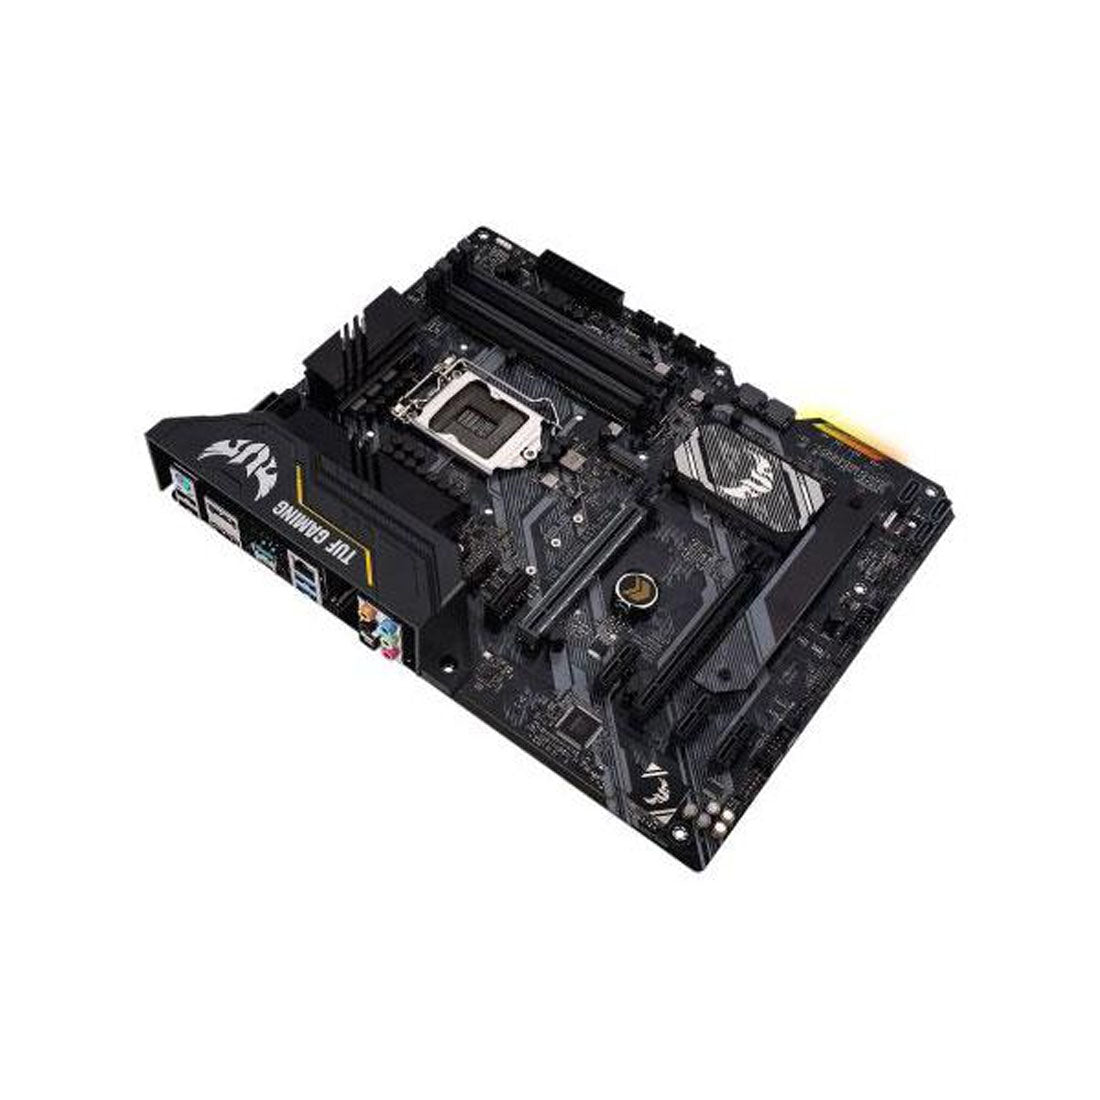 Asus TUF गेमिंग H470-Pro LGA 1200 ATX मदरबोर्ड ऑरा सिंक RGB और थंडरबोल्ट 3 सपोर्ट के साथ 